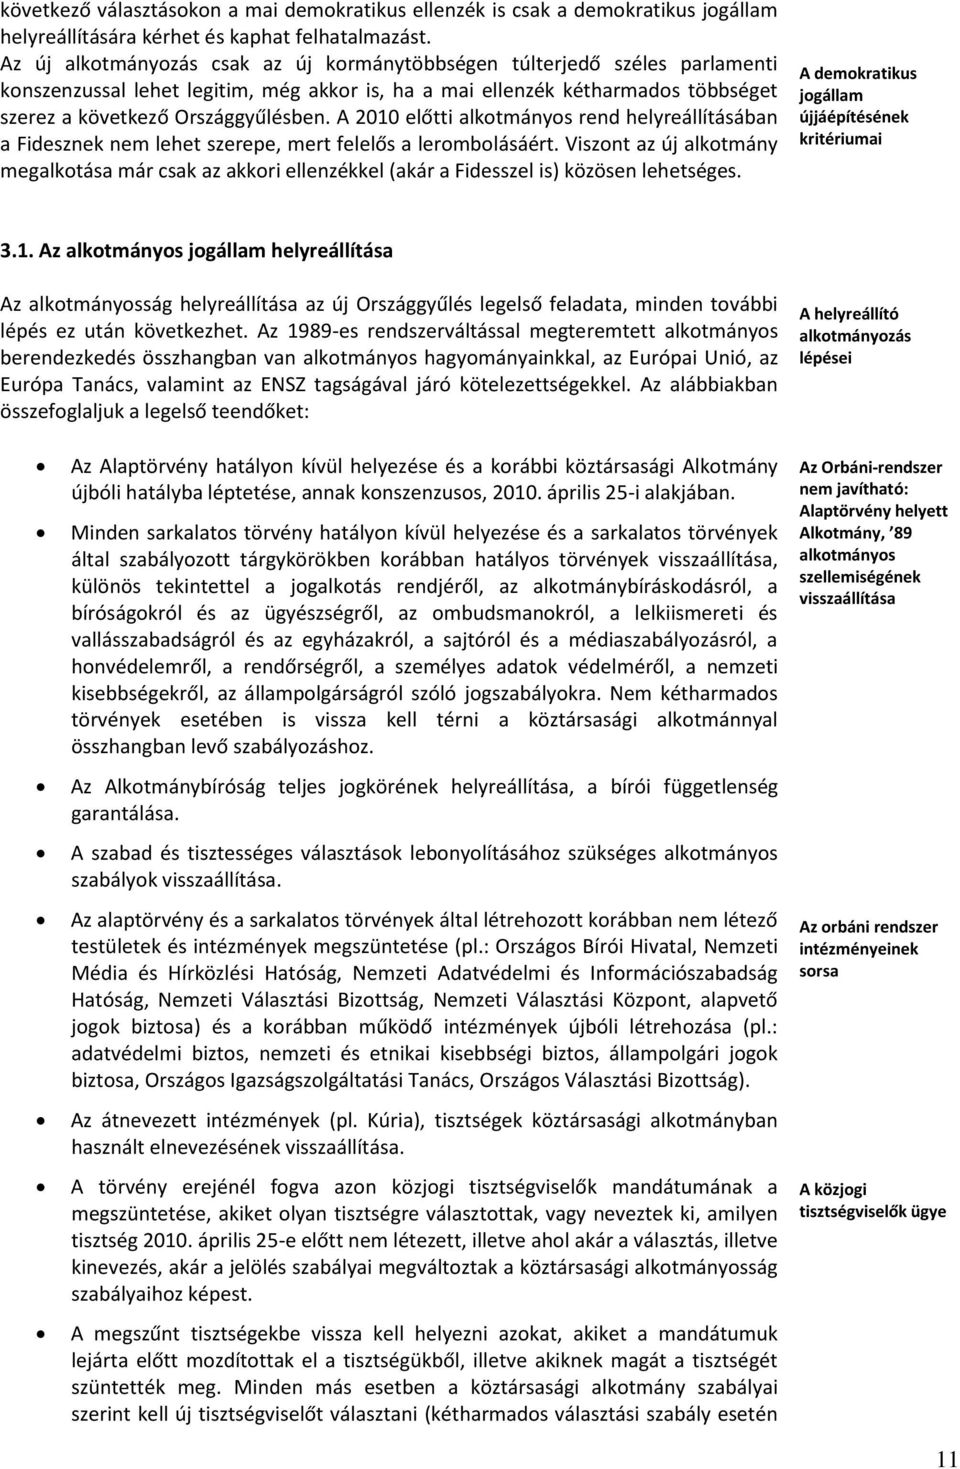 A 2010 előtti alkotmányos rend helyreállításában a Fidesznek nem lehet szerepe, mert felelős a lerombolásáért.